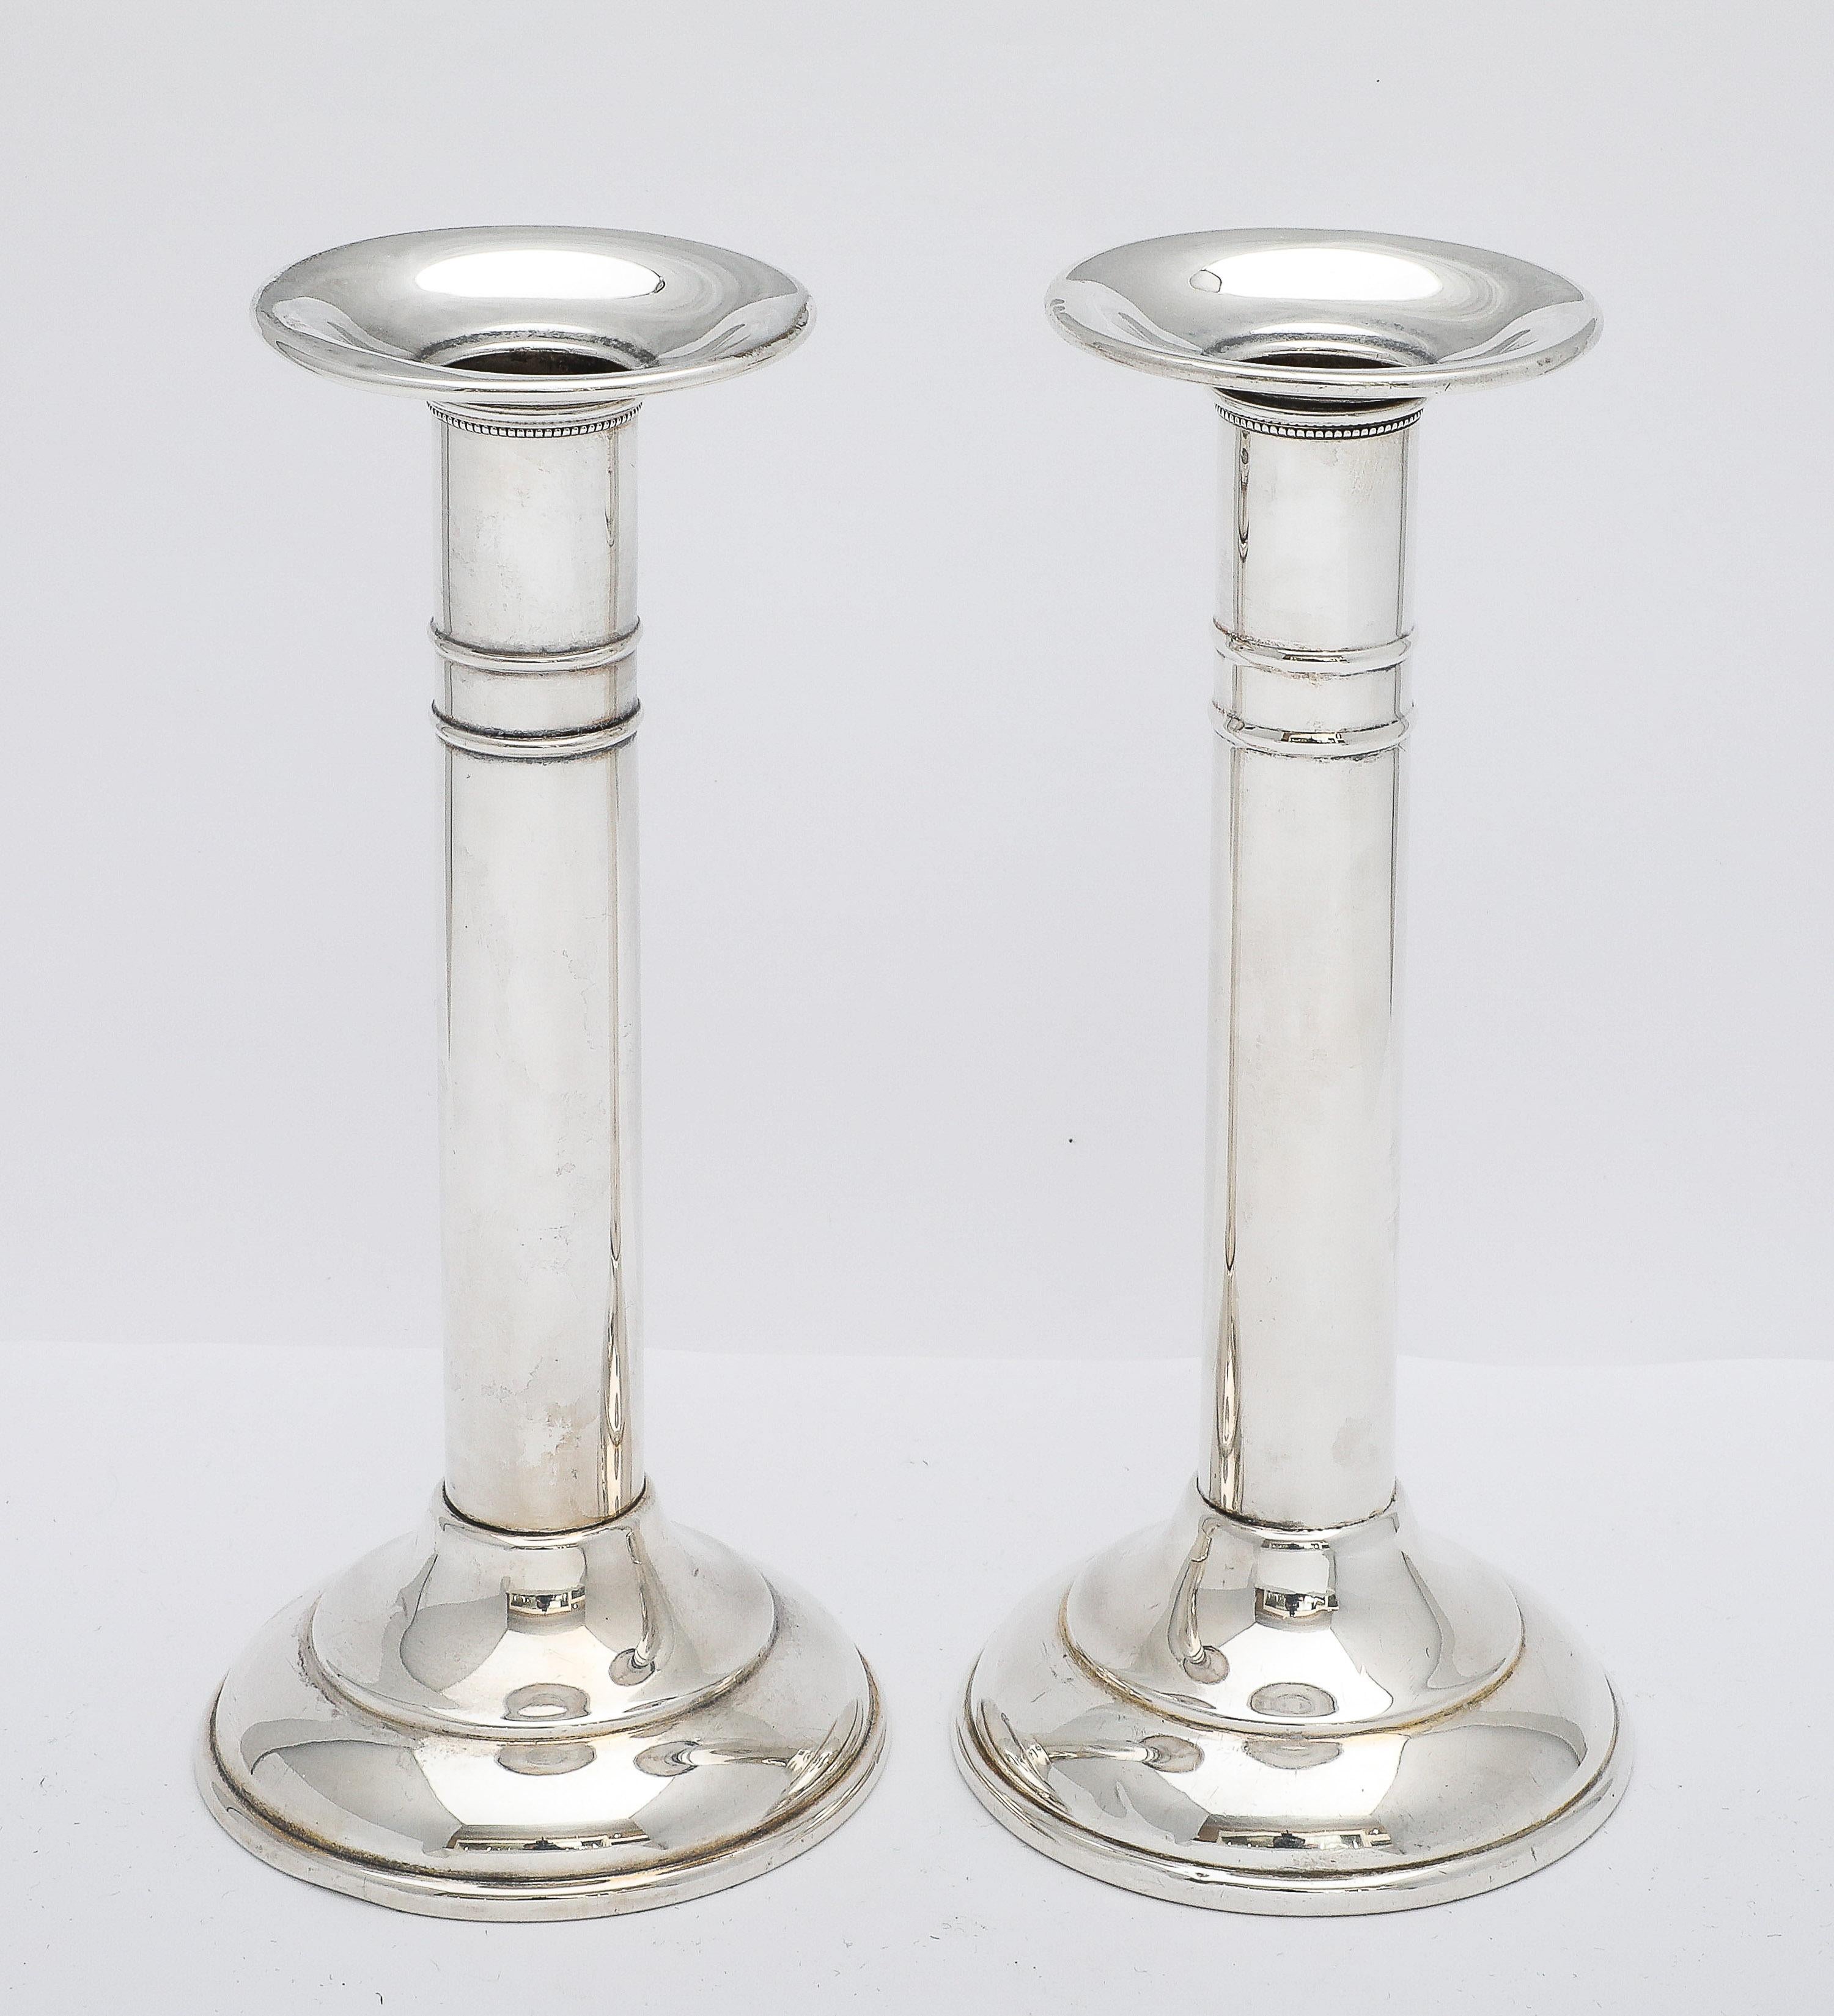 Paar Kerzenhalter aus Sterlingsilber aus der Edwardianischen Periode, Adelphi Silver Co, New York, ca. 1915. Jeder Kerzenständer misst über 6 1/2 Zoll hoch x 3 Zoll Durchmesser (an der breitesten Stelle - über die Basis). Jeder Kerzenständer wird